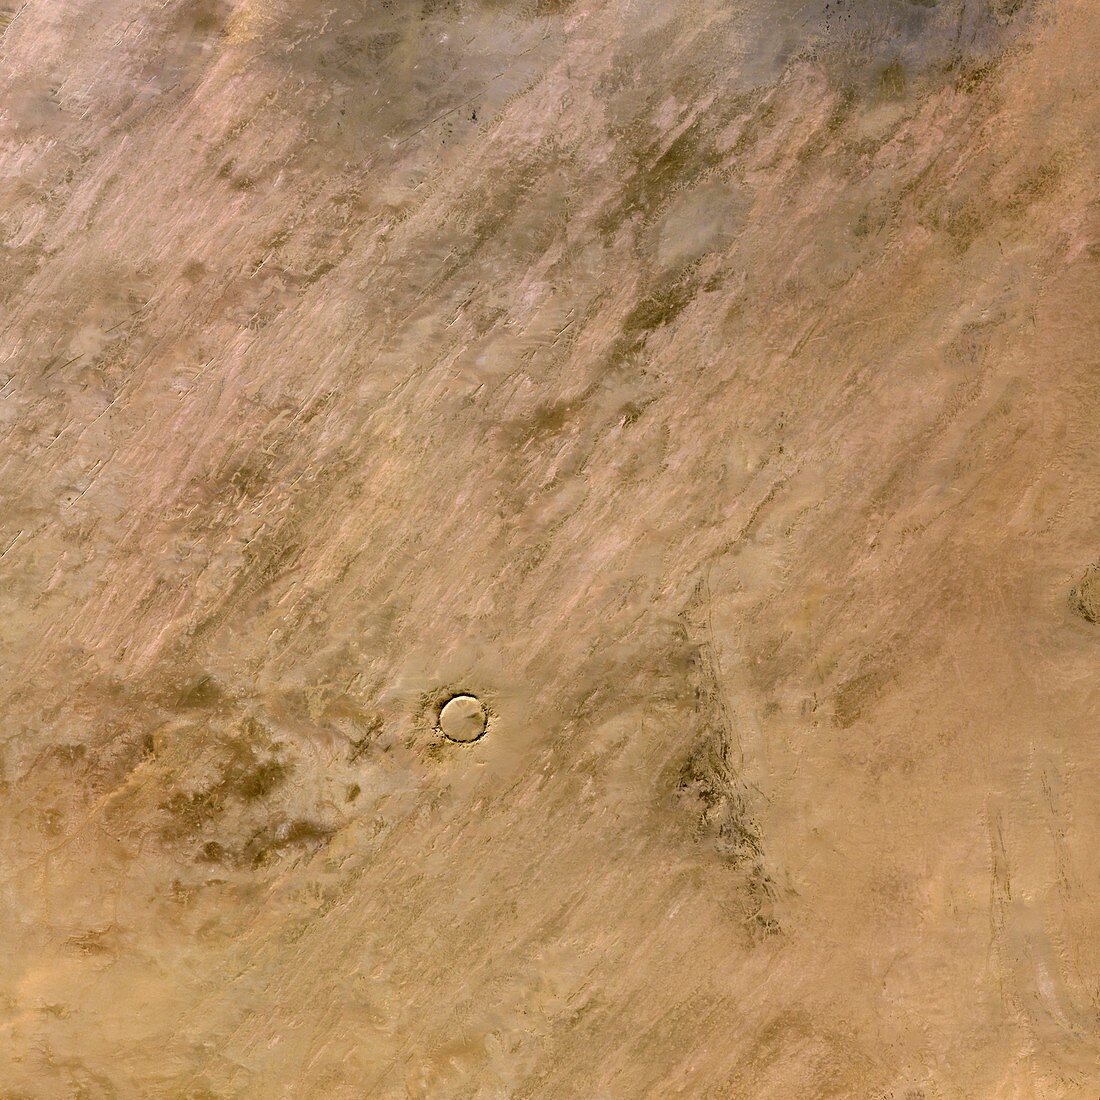 Tenoumer Crater,satellite image